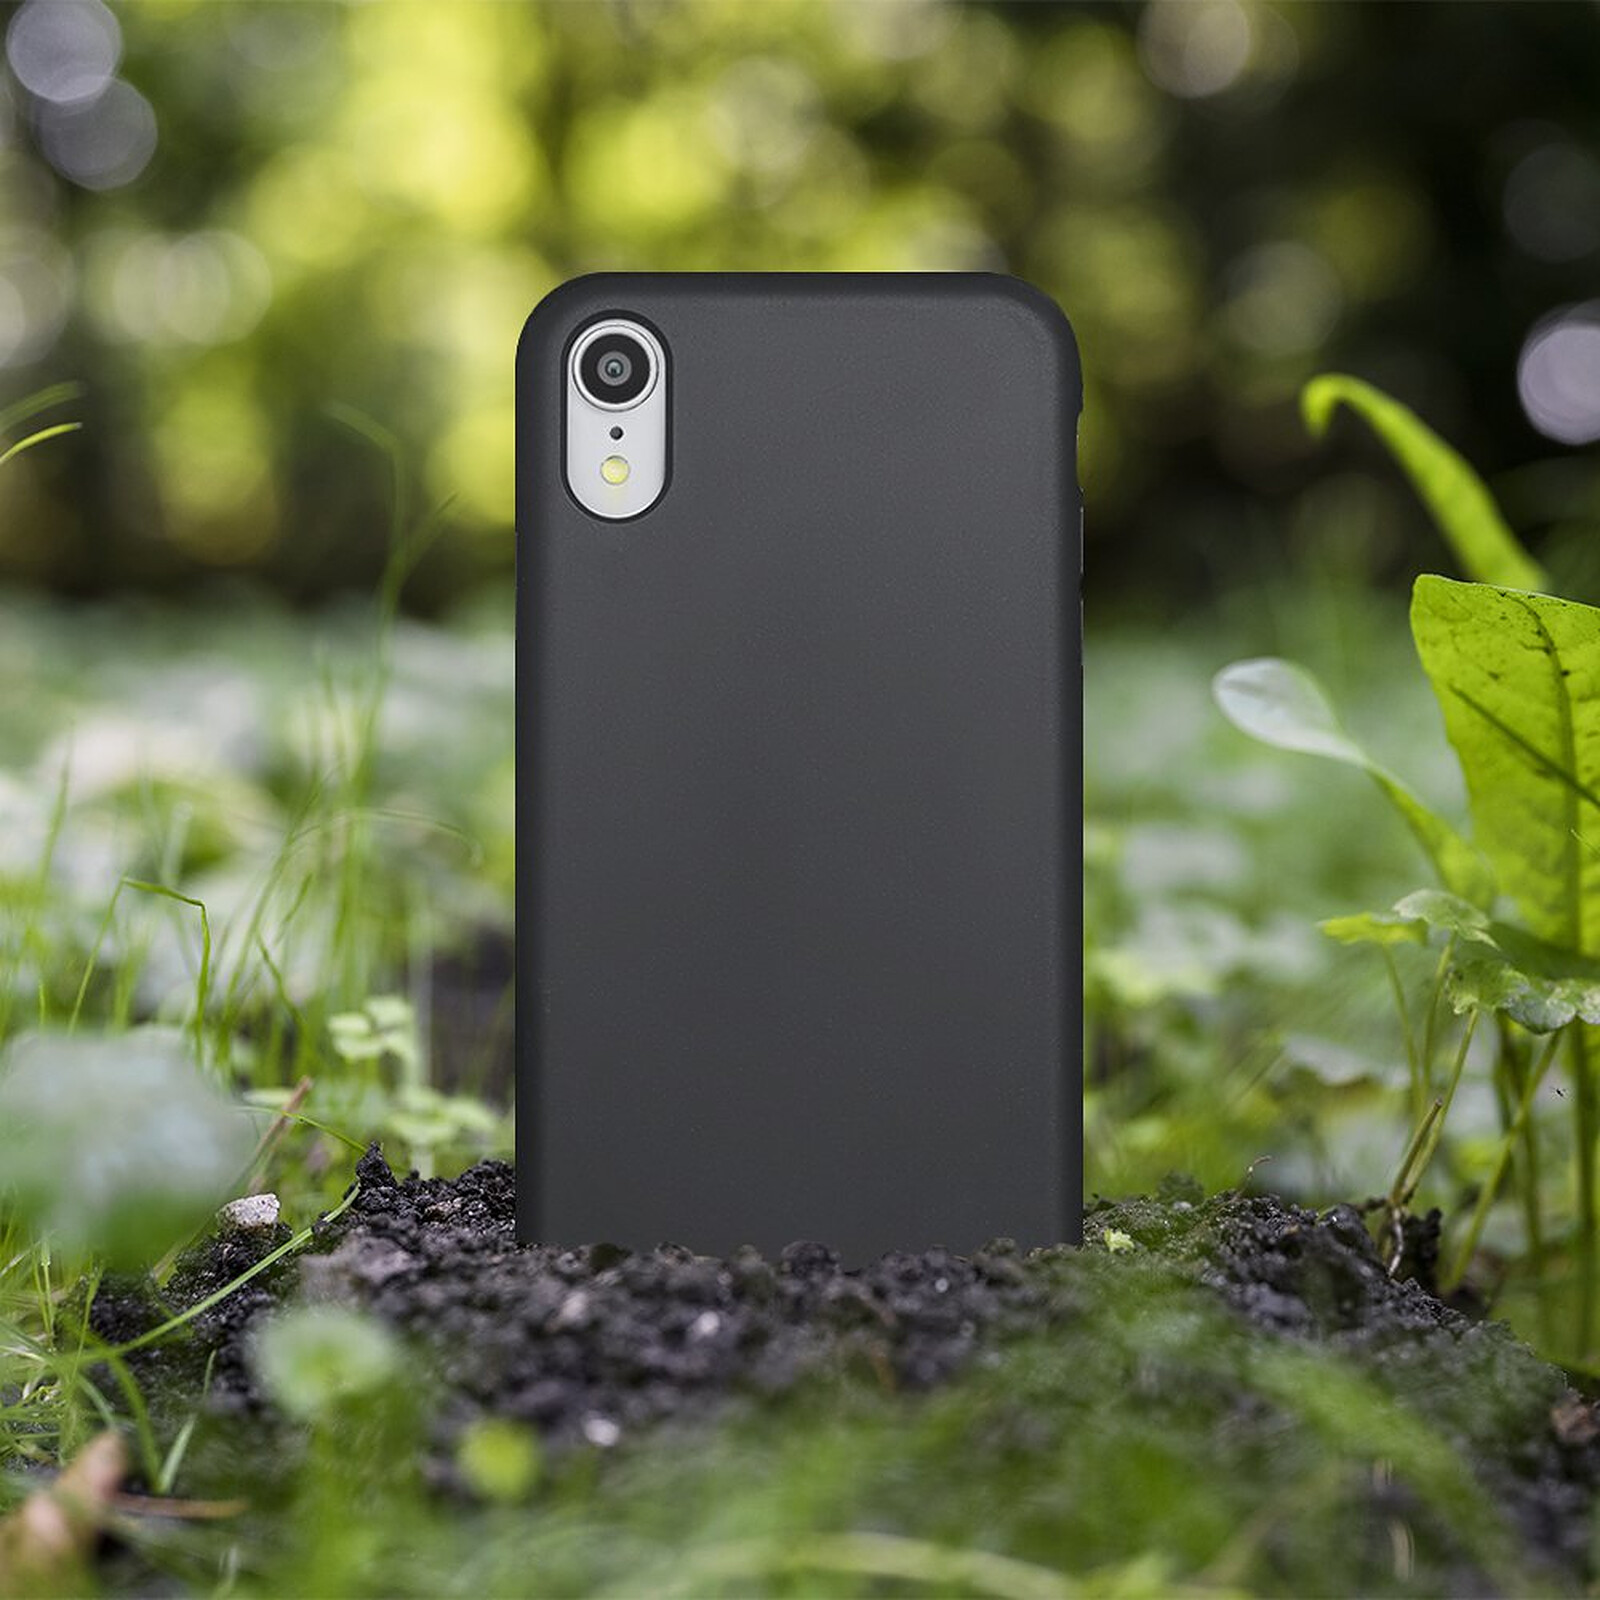 LaCoqueFrançaise Coque iPhone Xr Silicone Liquide Douce noir Fleurs vert d' eau - Coque téléphone - LDLC